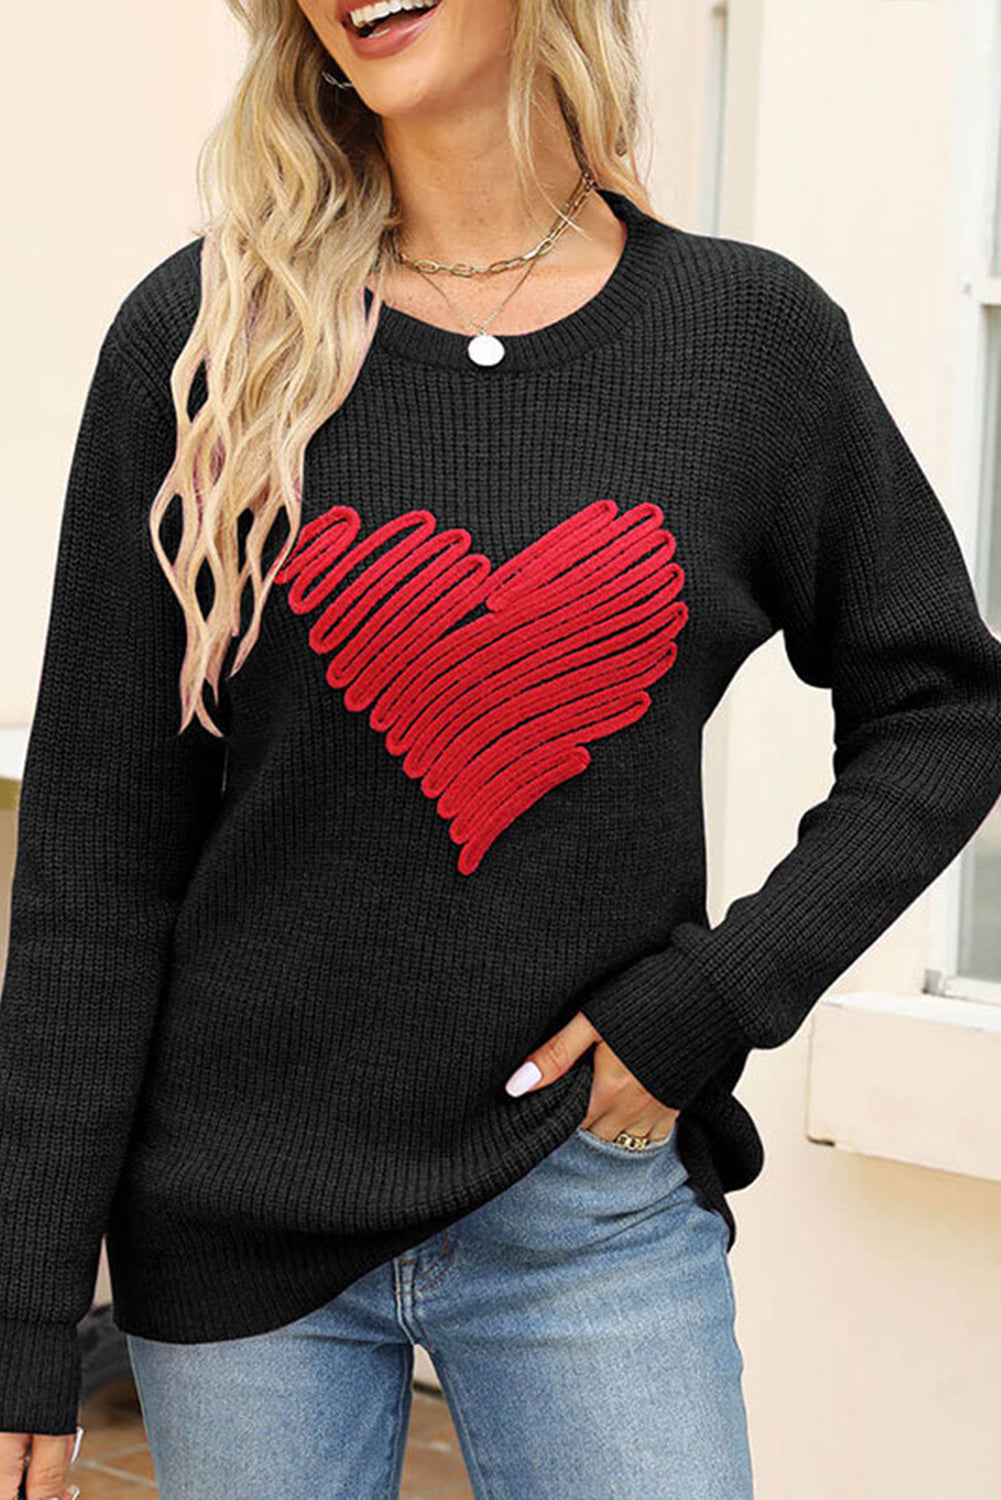 Črn pulover z okroglim izrezom v obliki srčka za Valentinovo